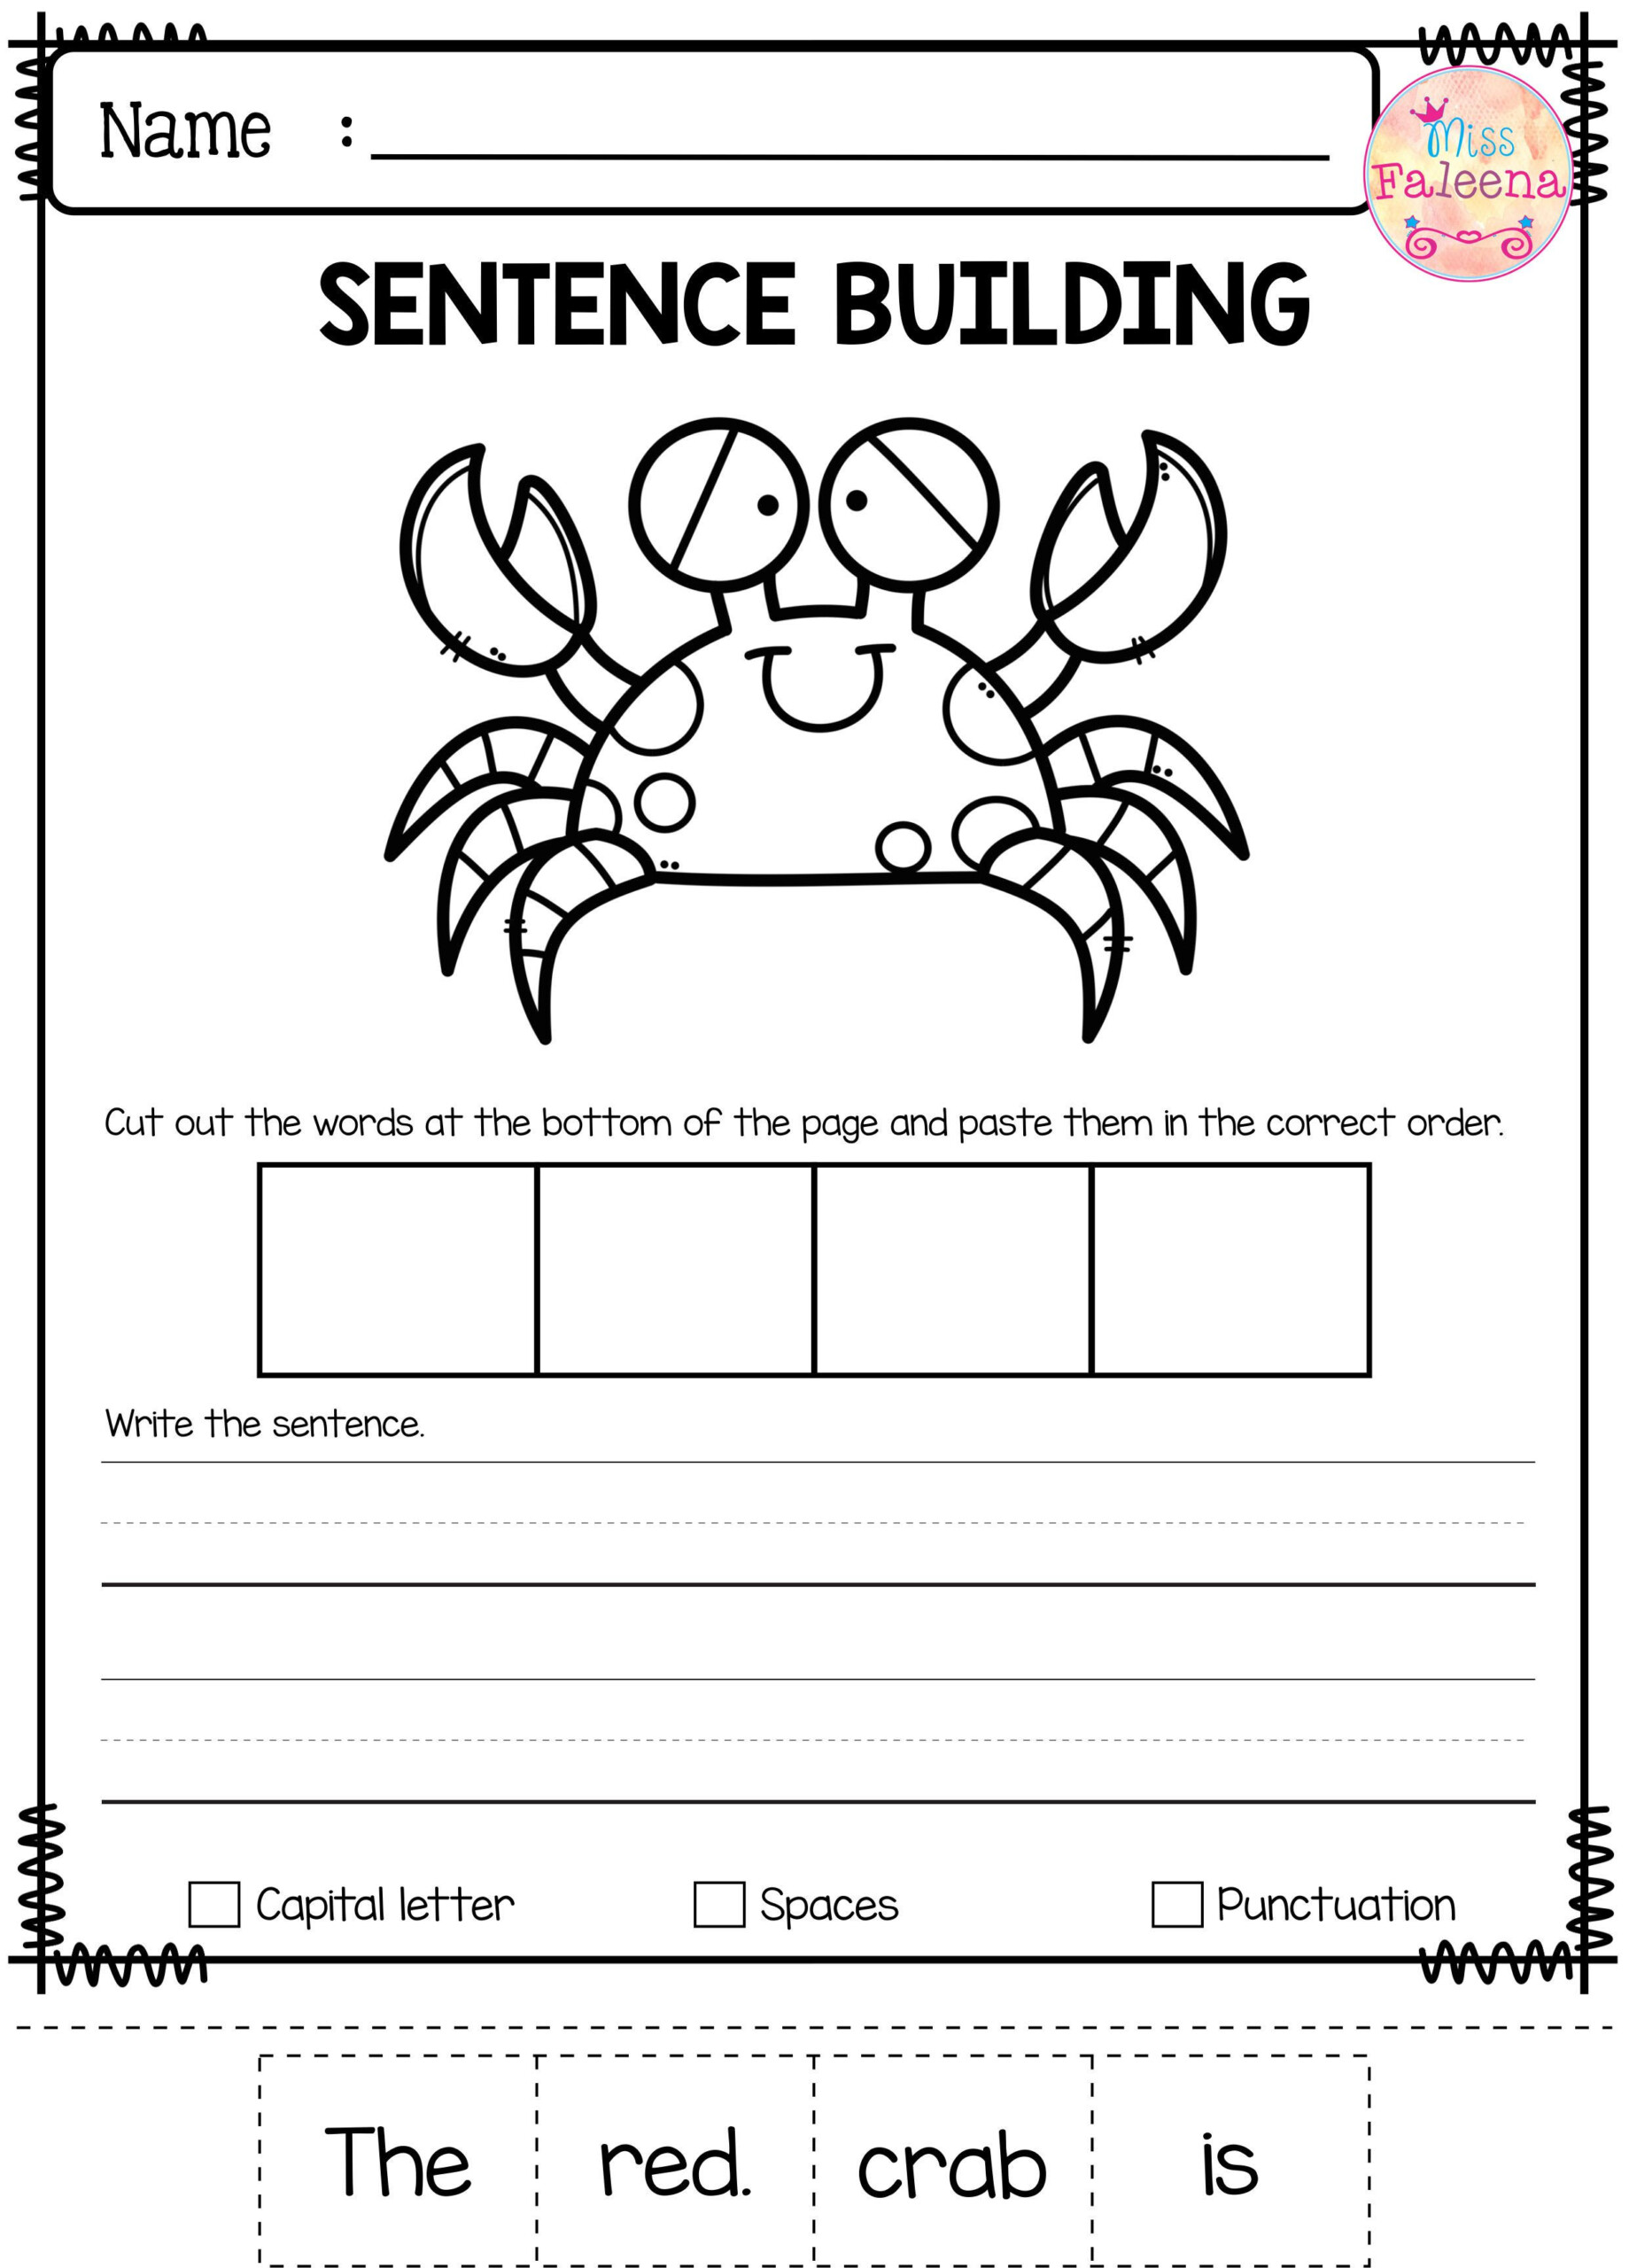 Free Printable Sentence Building Worksheets For Kindergarten